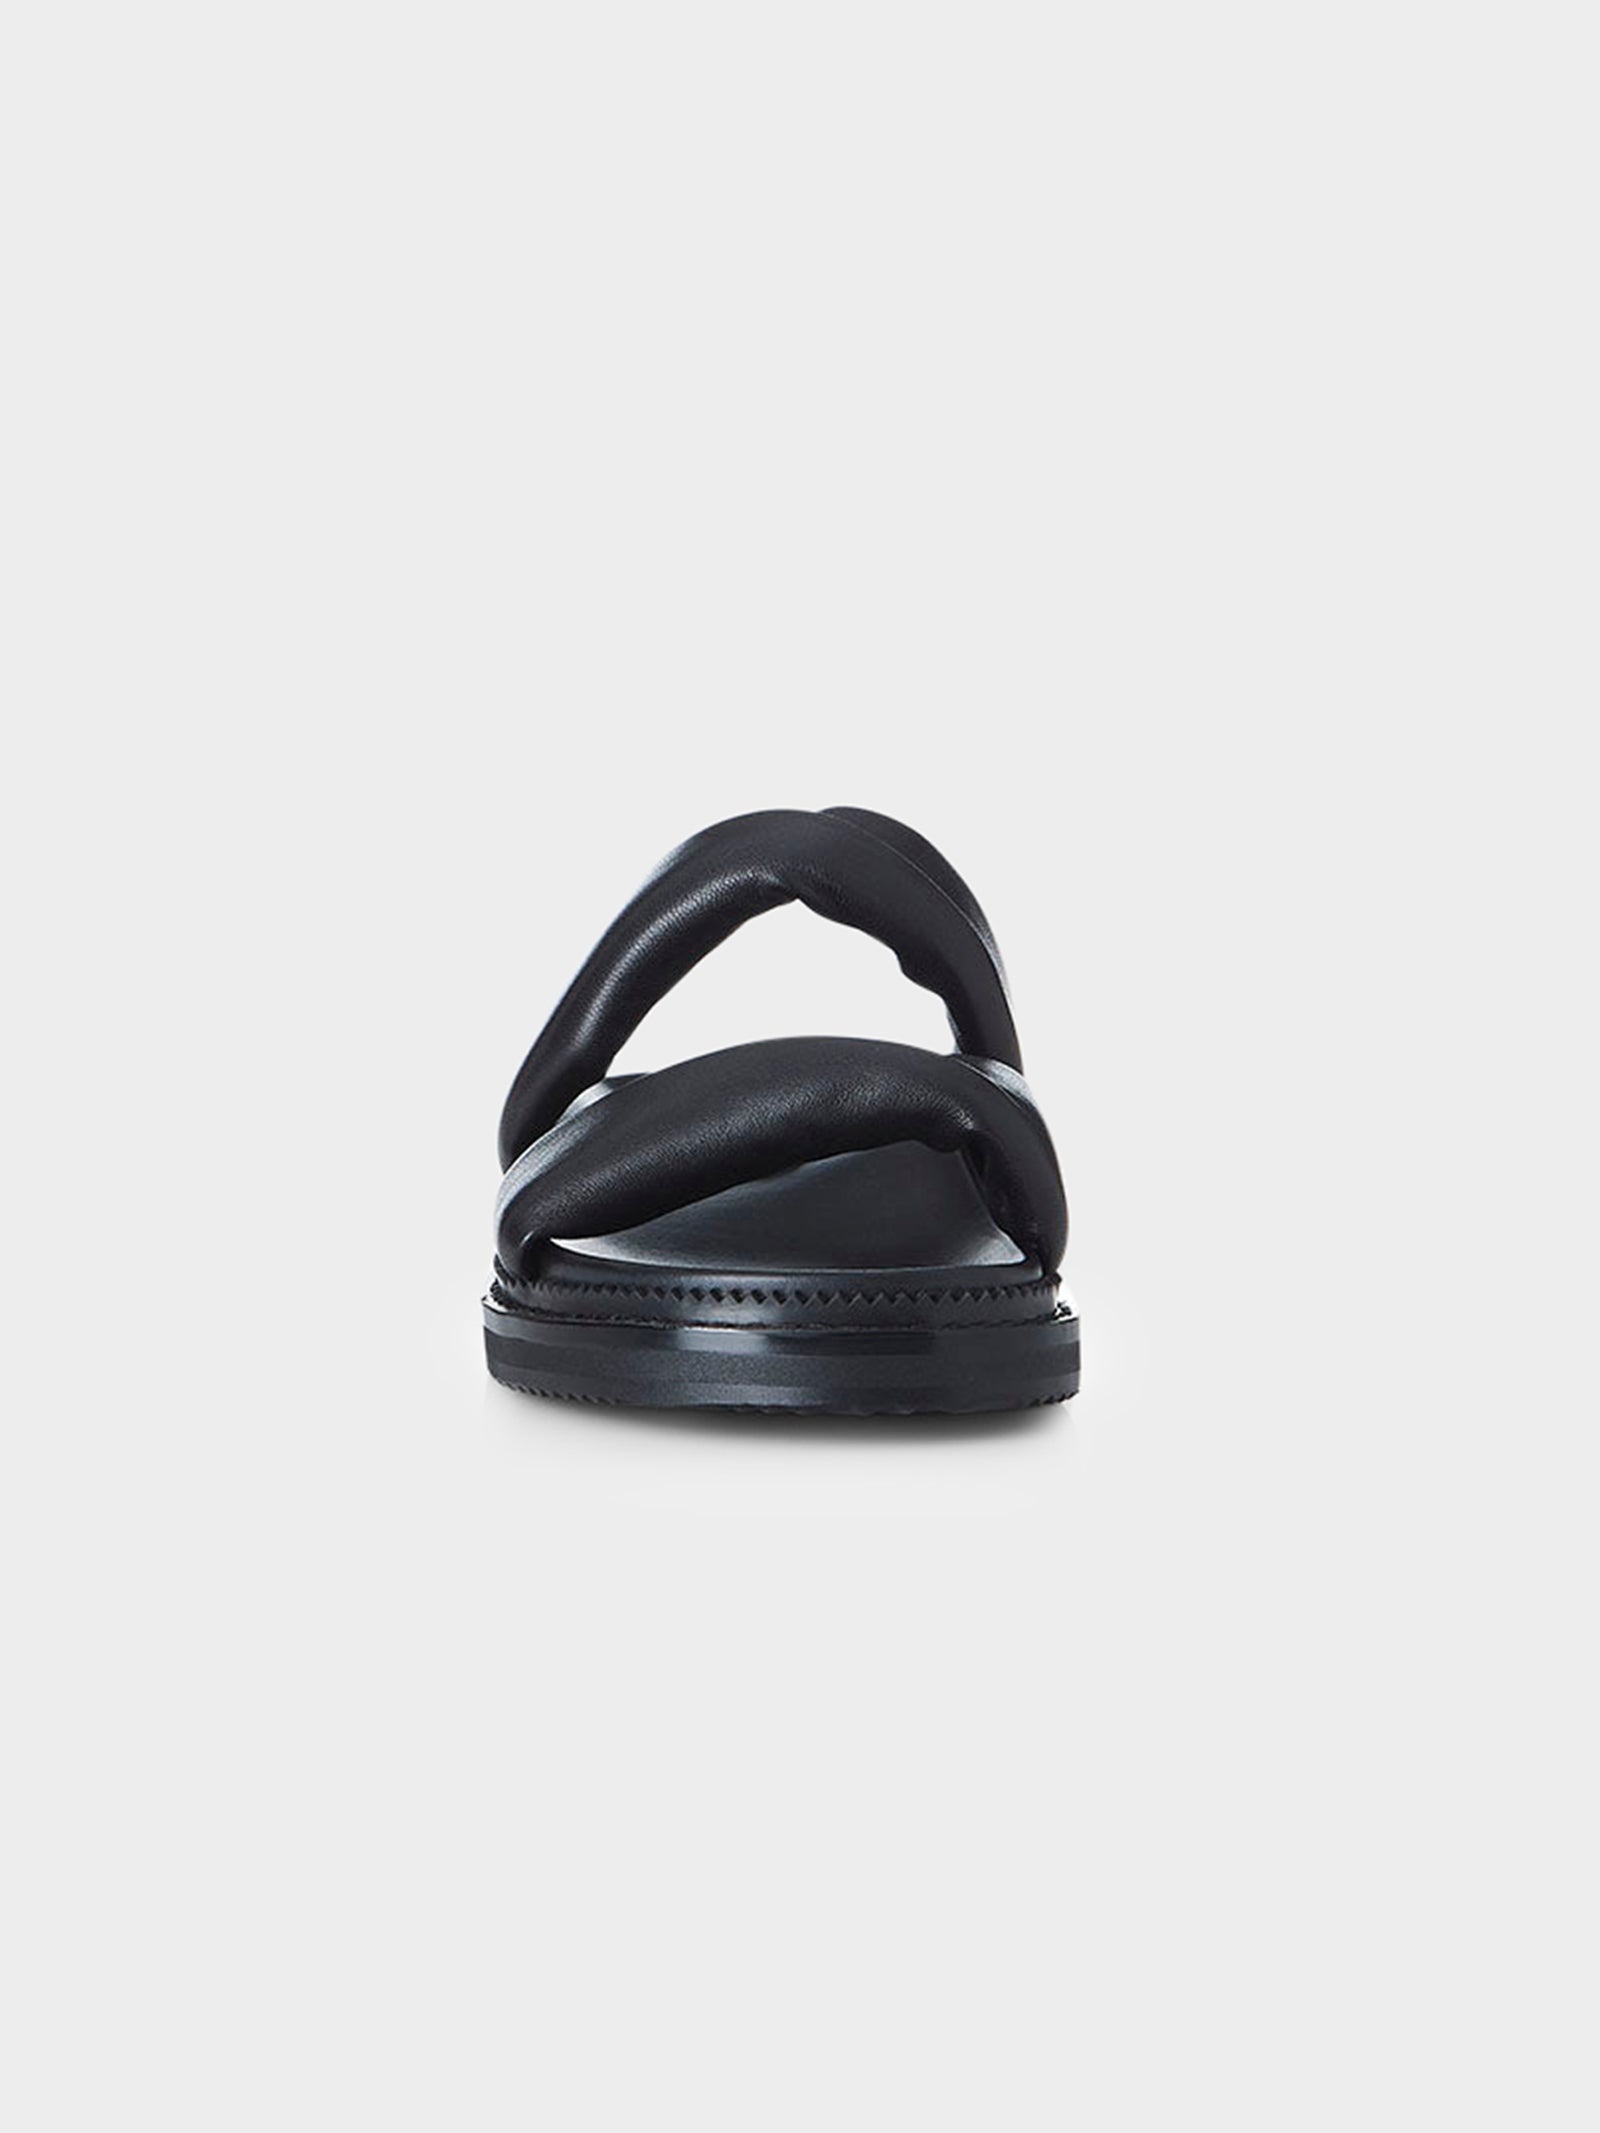 Paris Sandals in Black